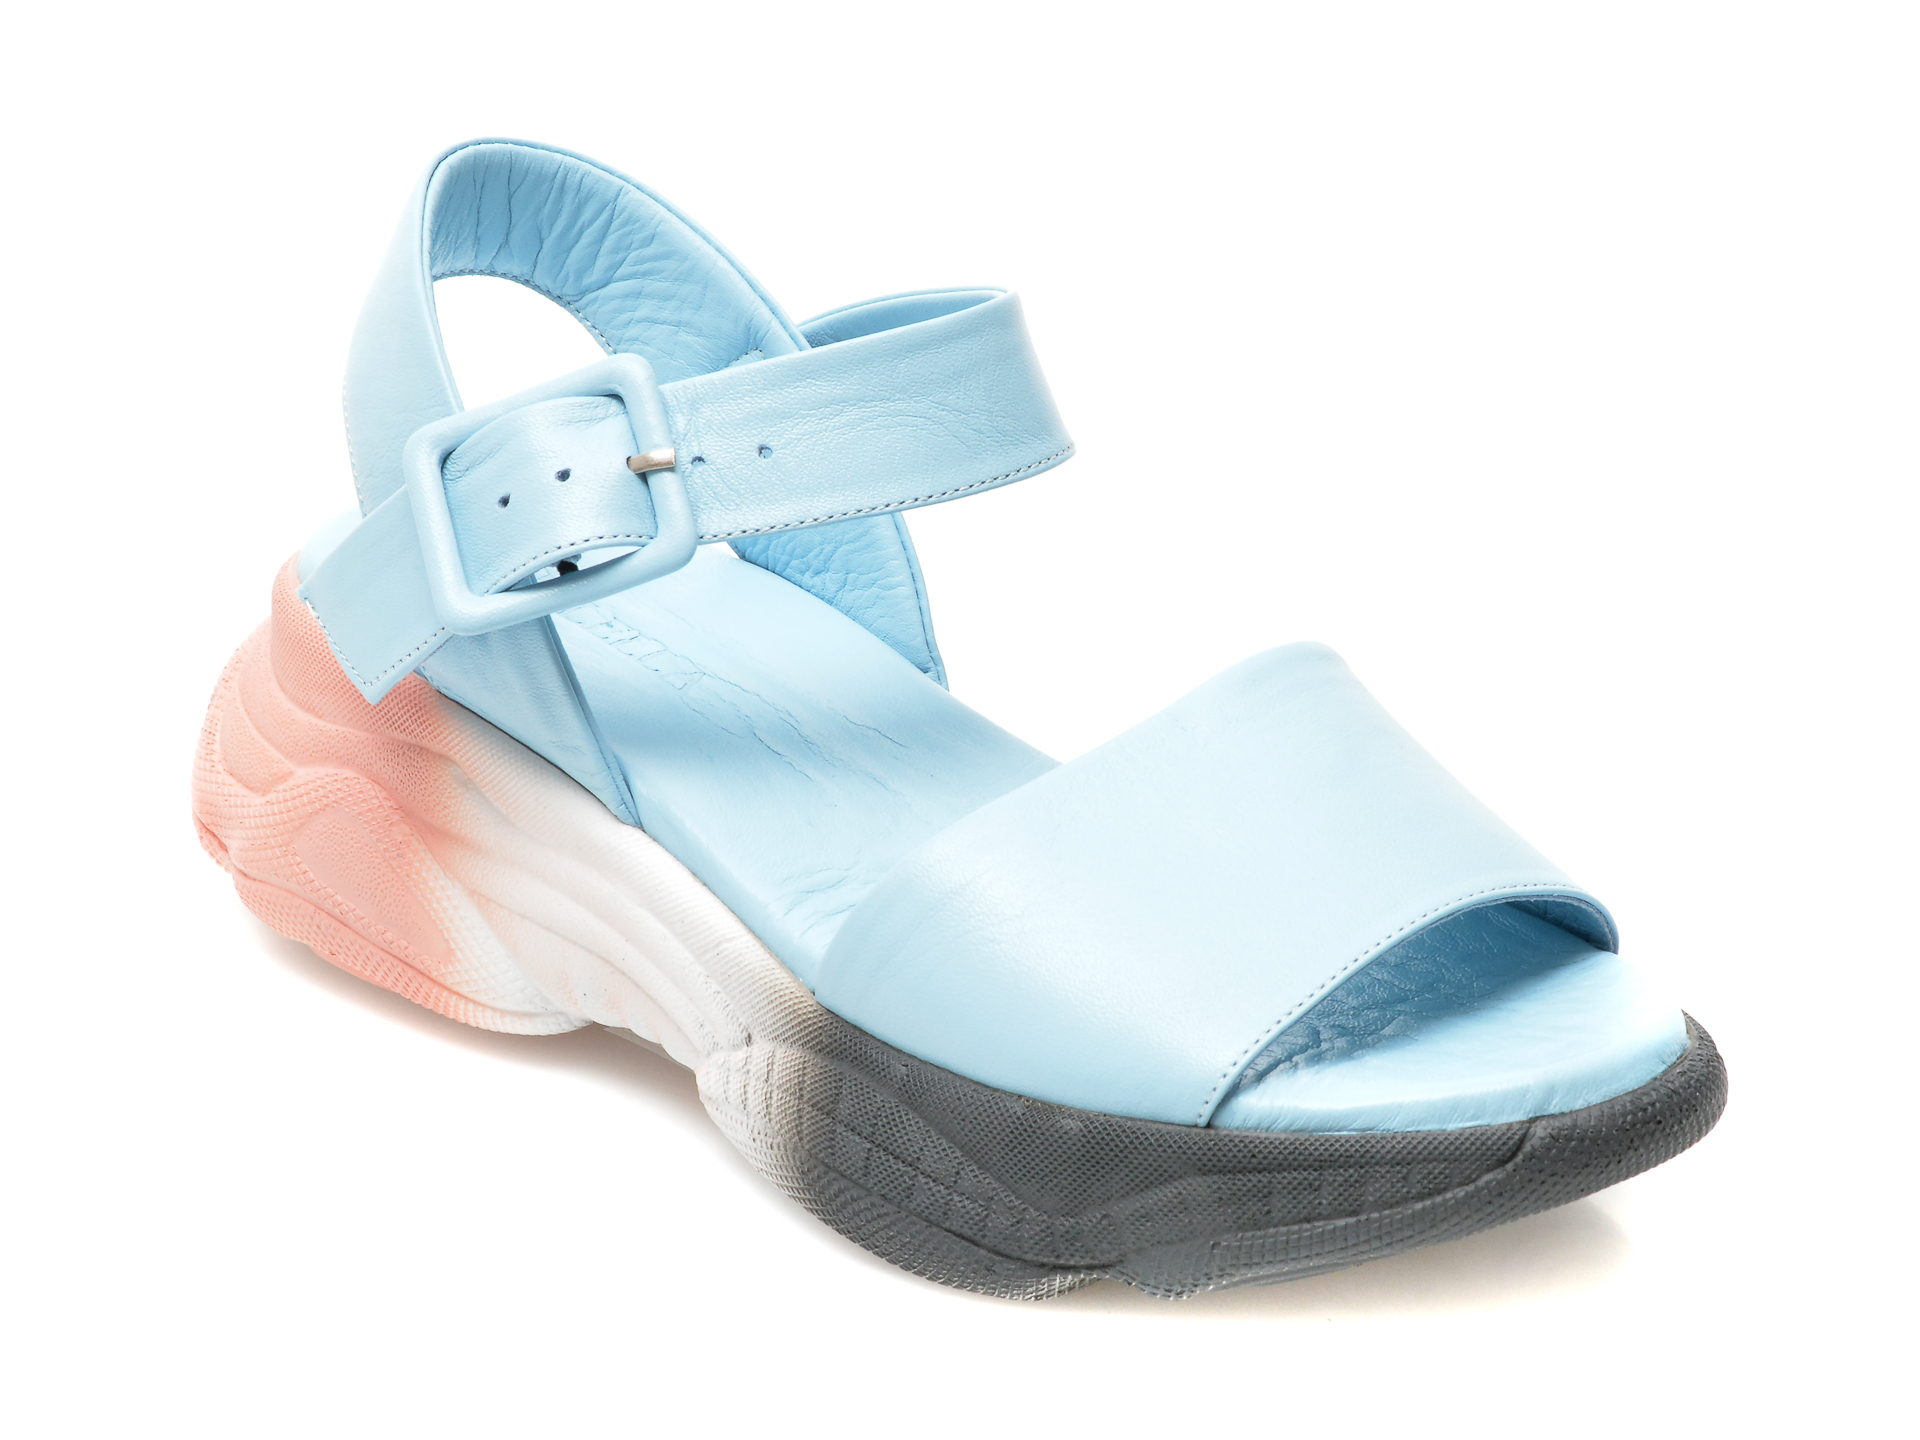 Sandale LOLILELLA albastru deschis, 1581078, din piele naturala /femei/sandale